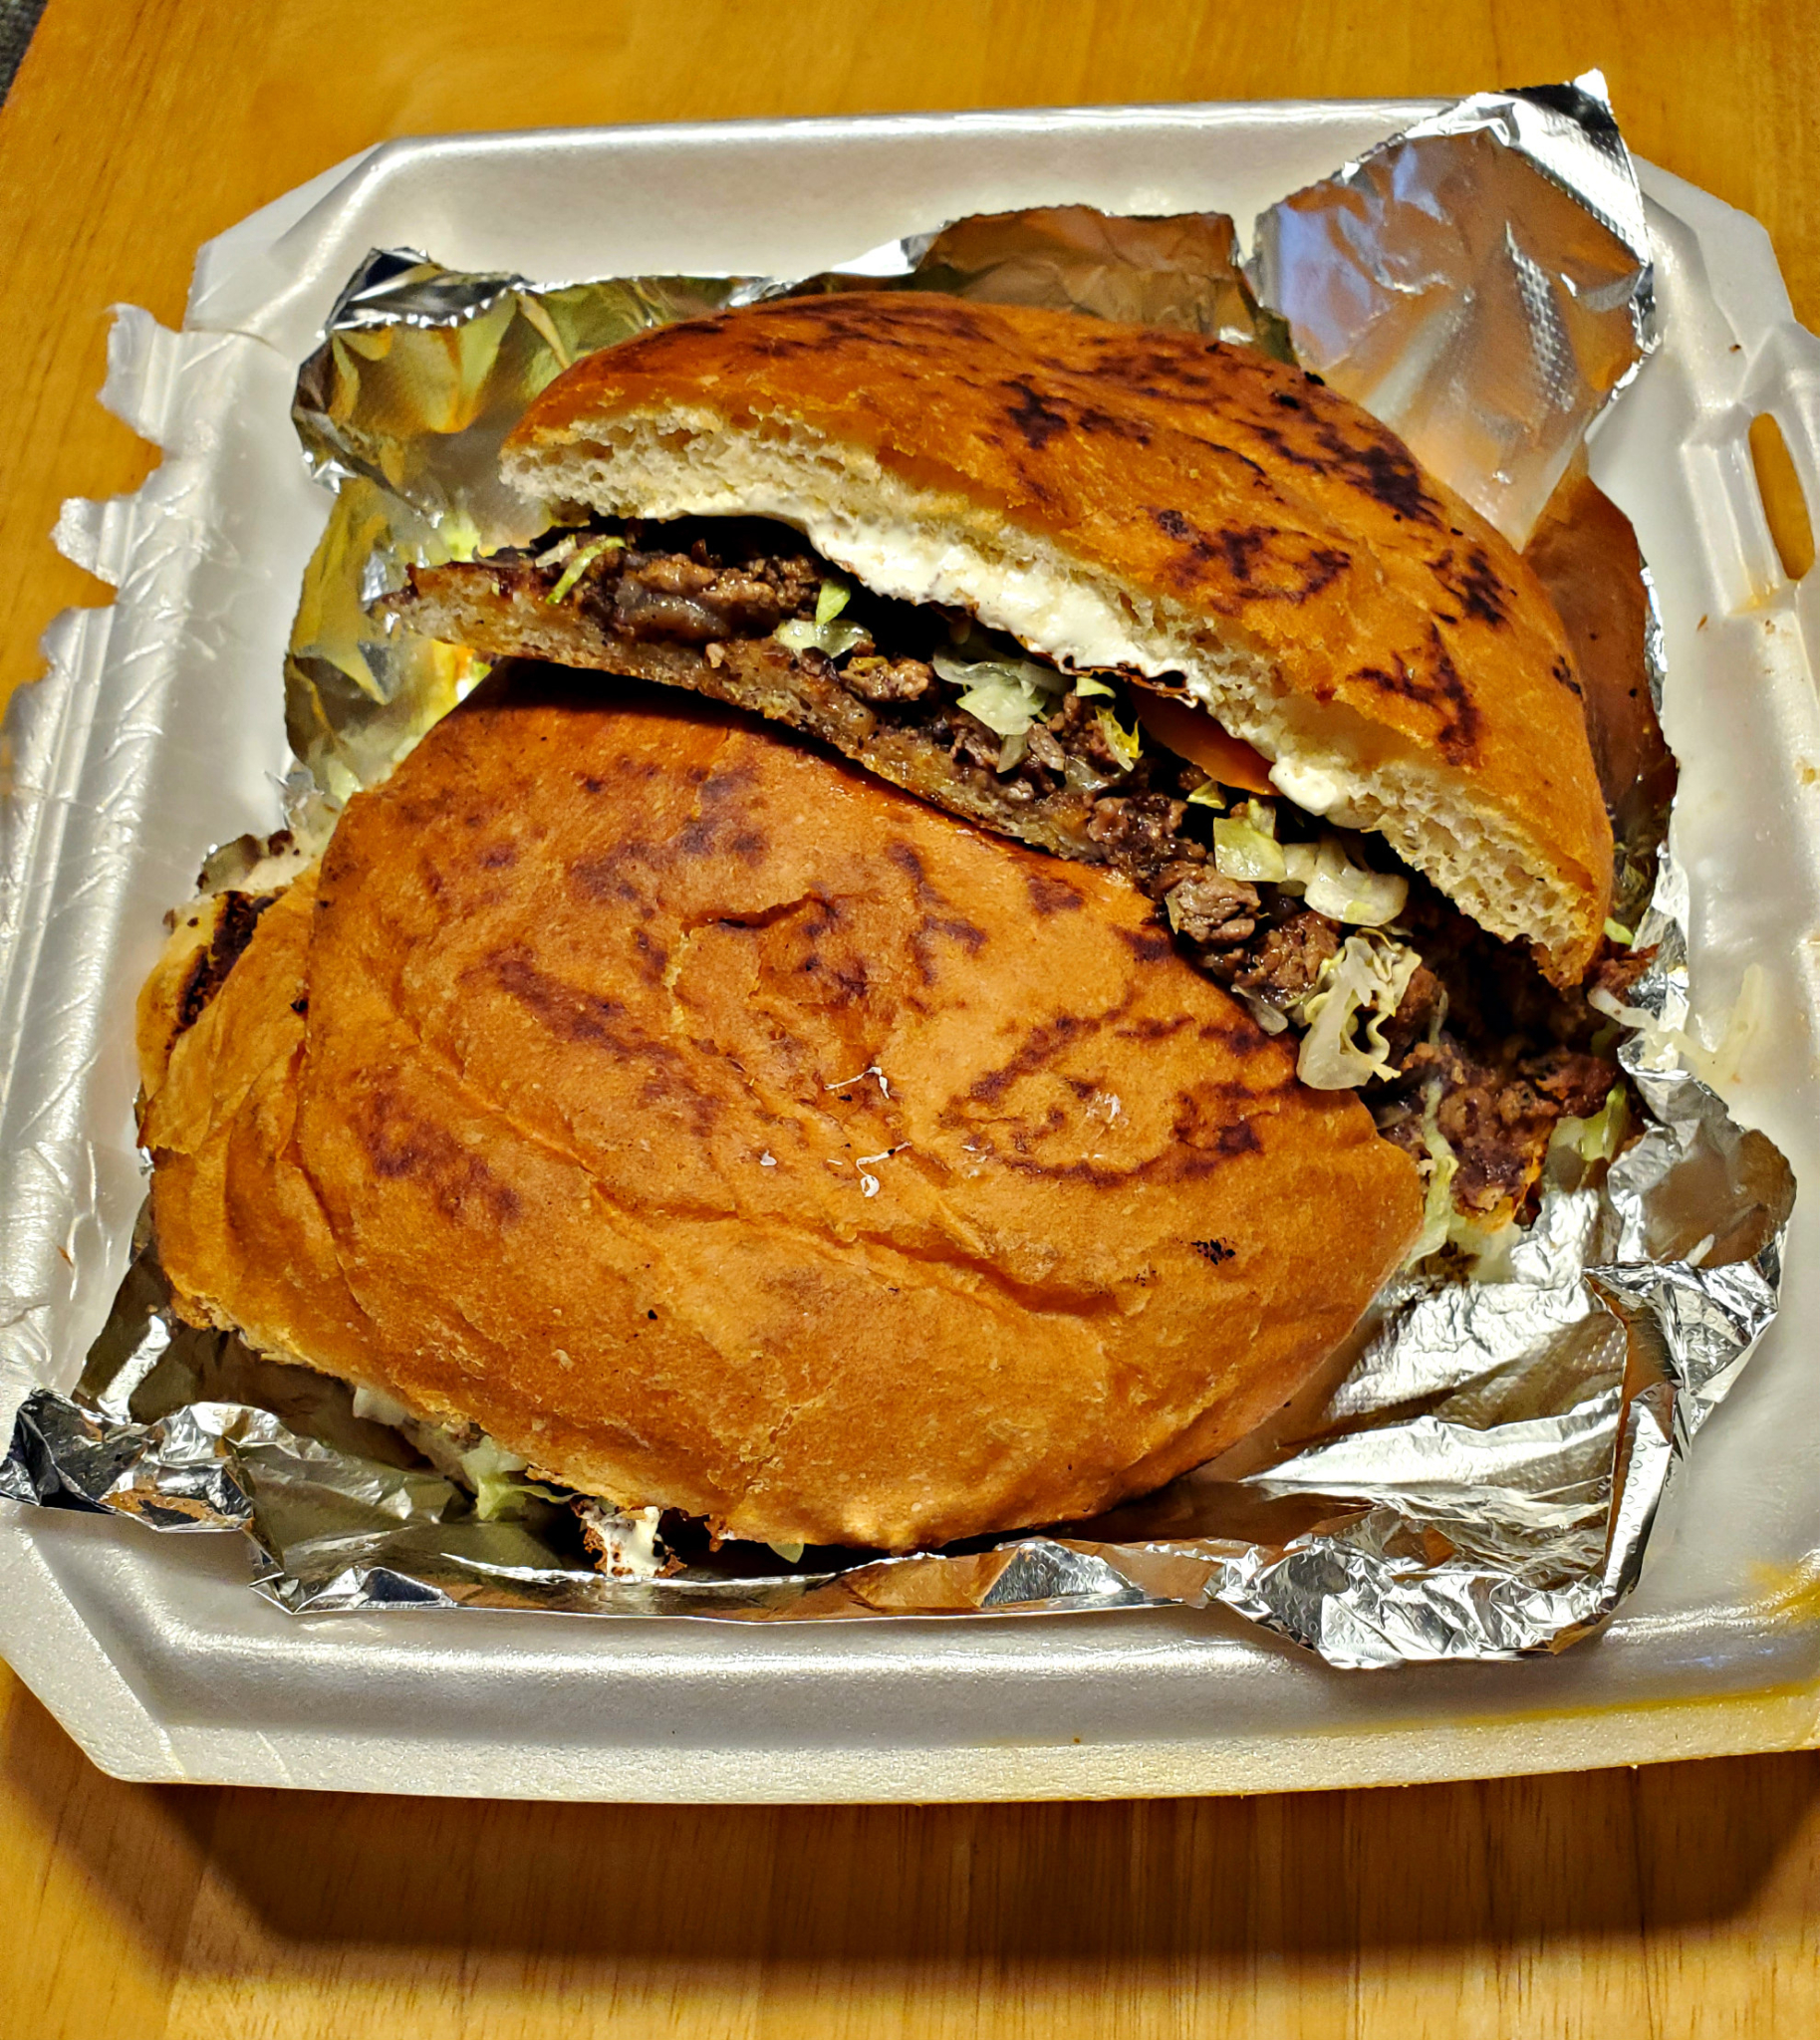 Torta sandwich from Tortas Locas